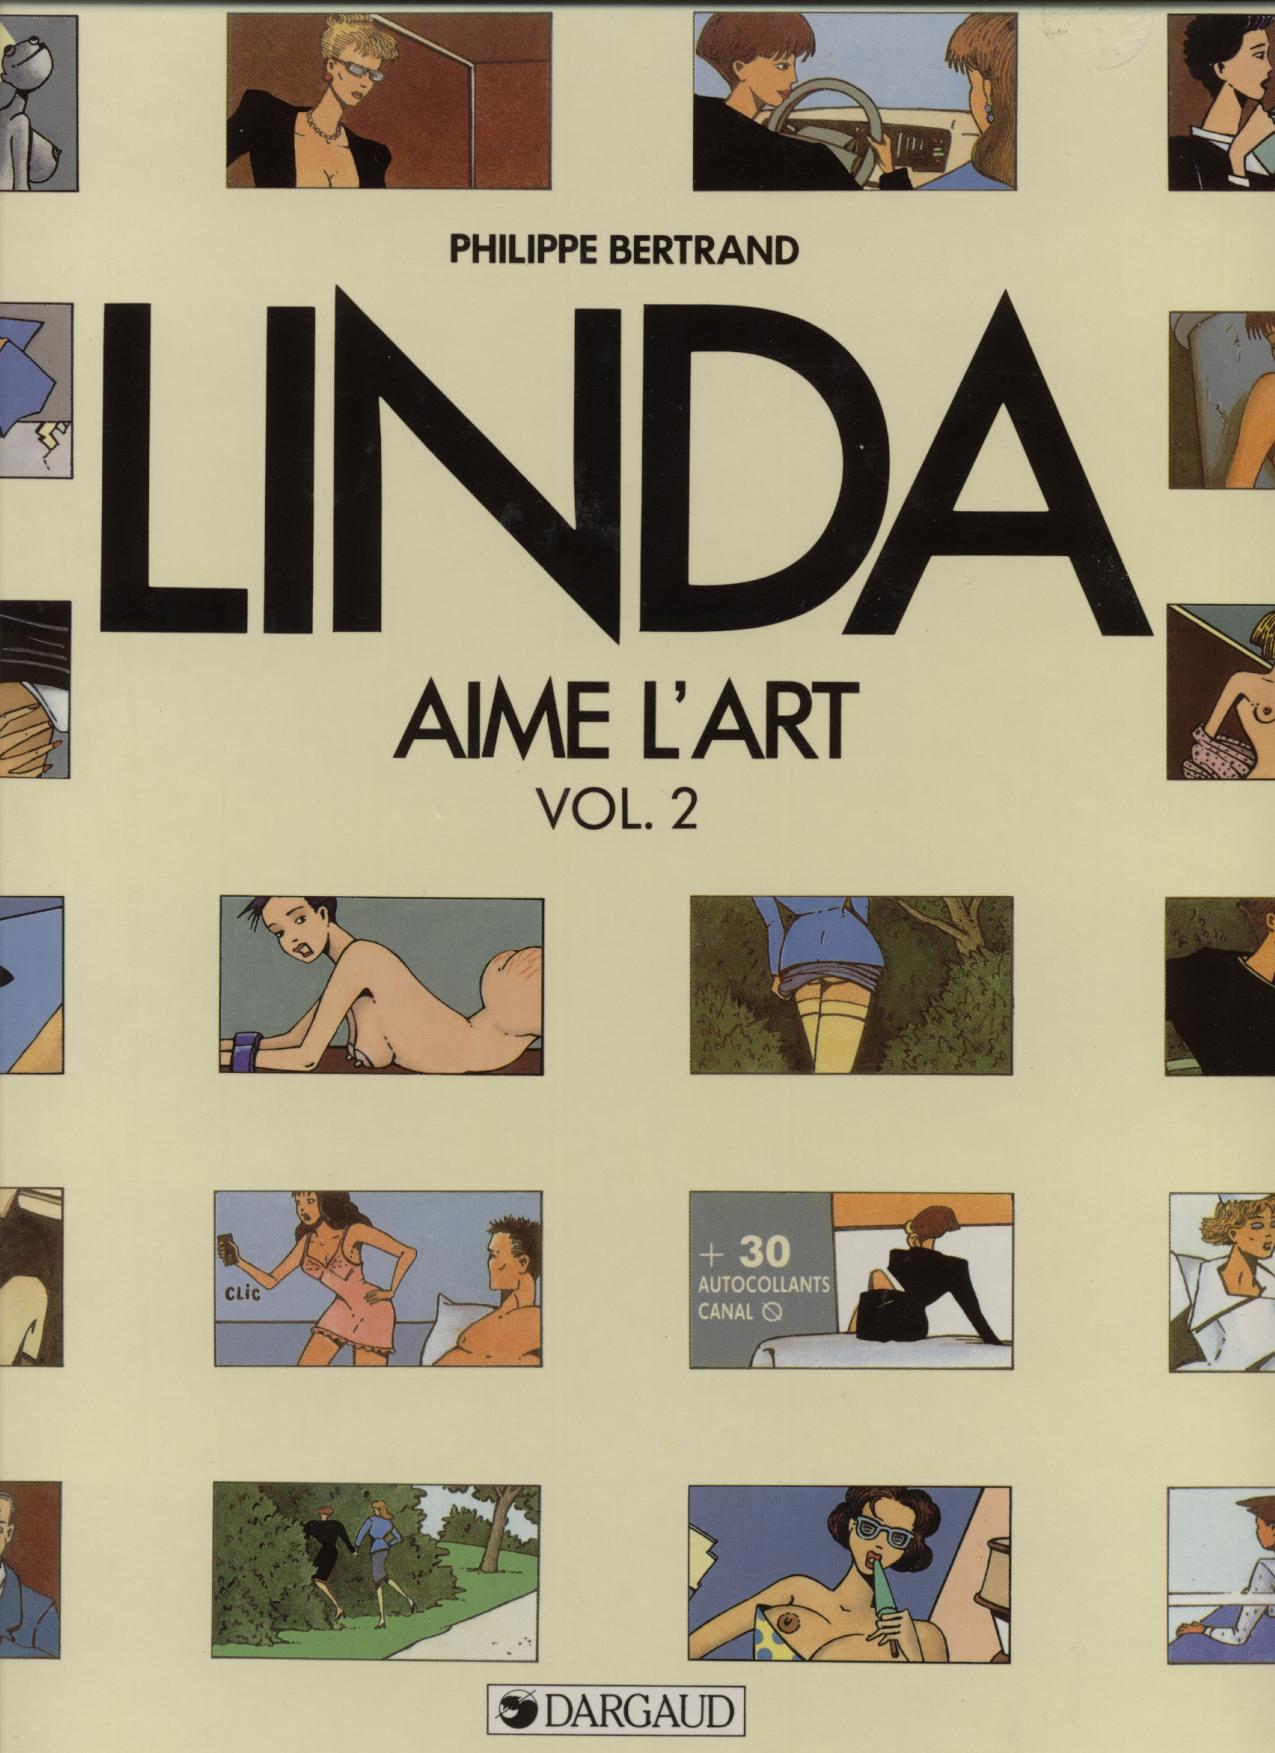 Linda Aime LArt Vol.2